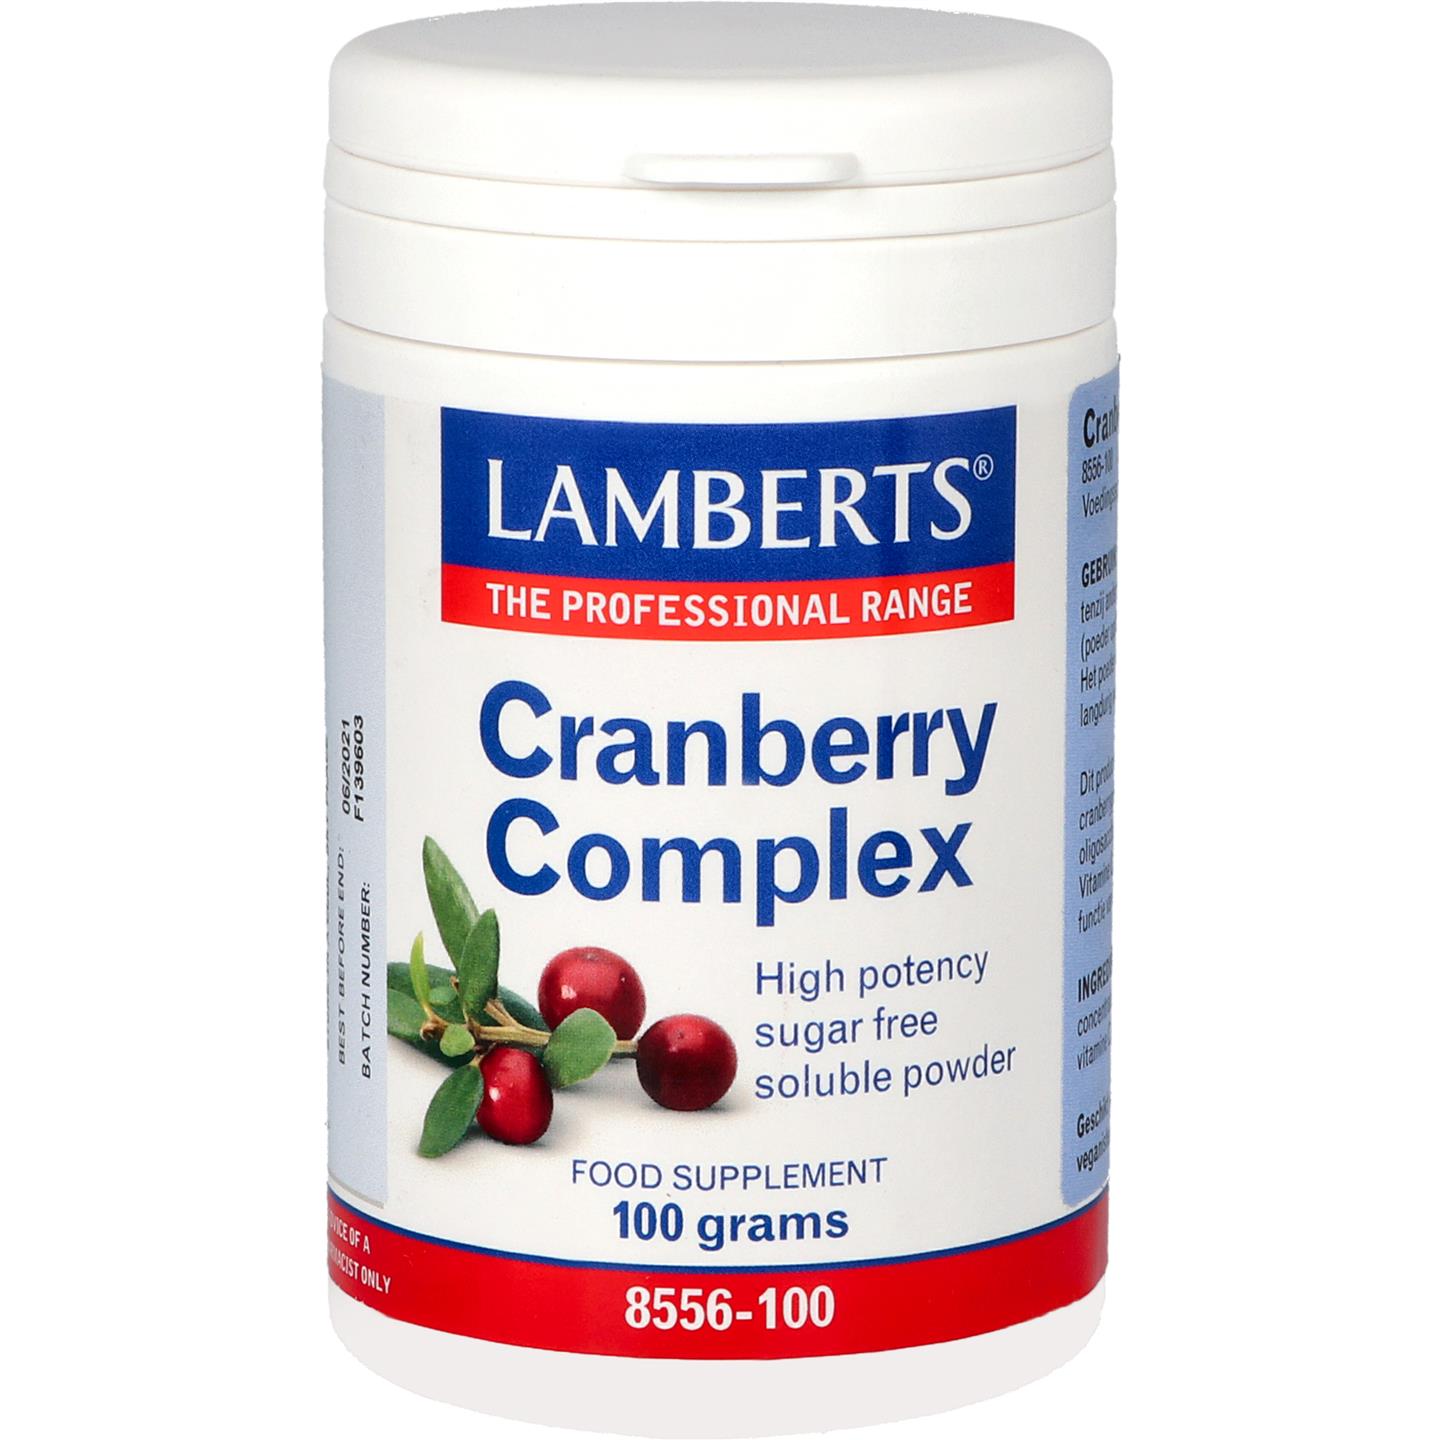 Cranberry complex